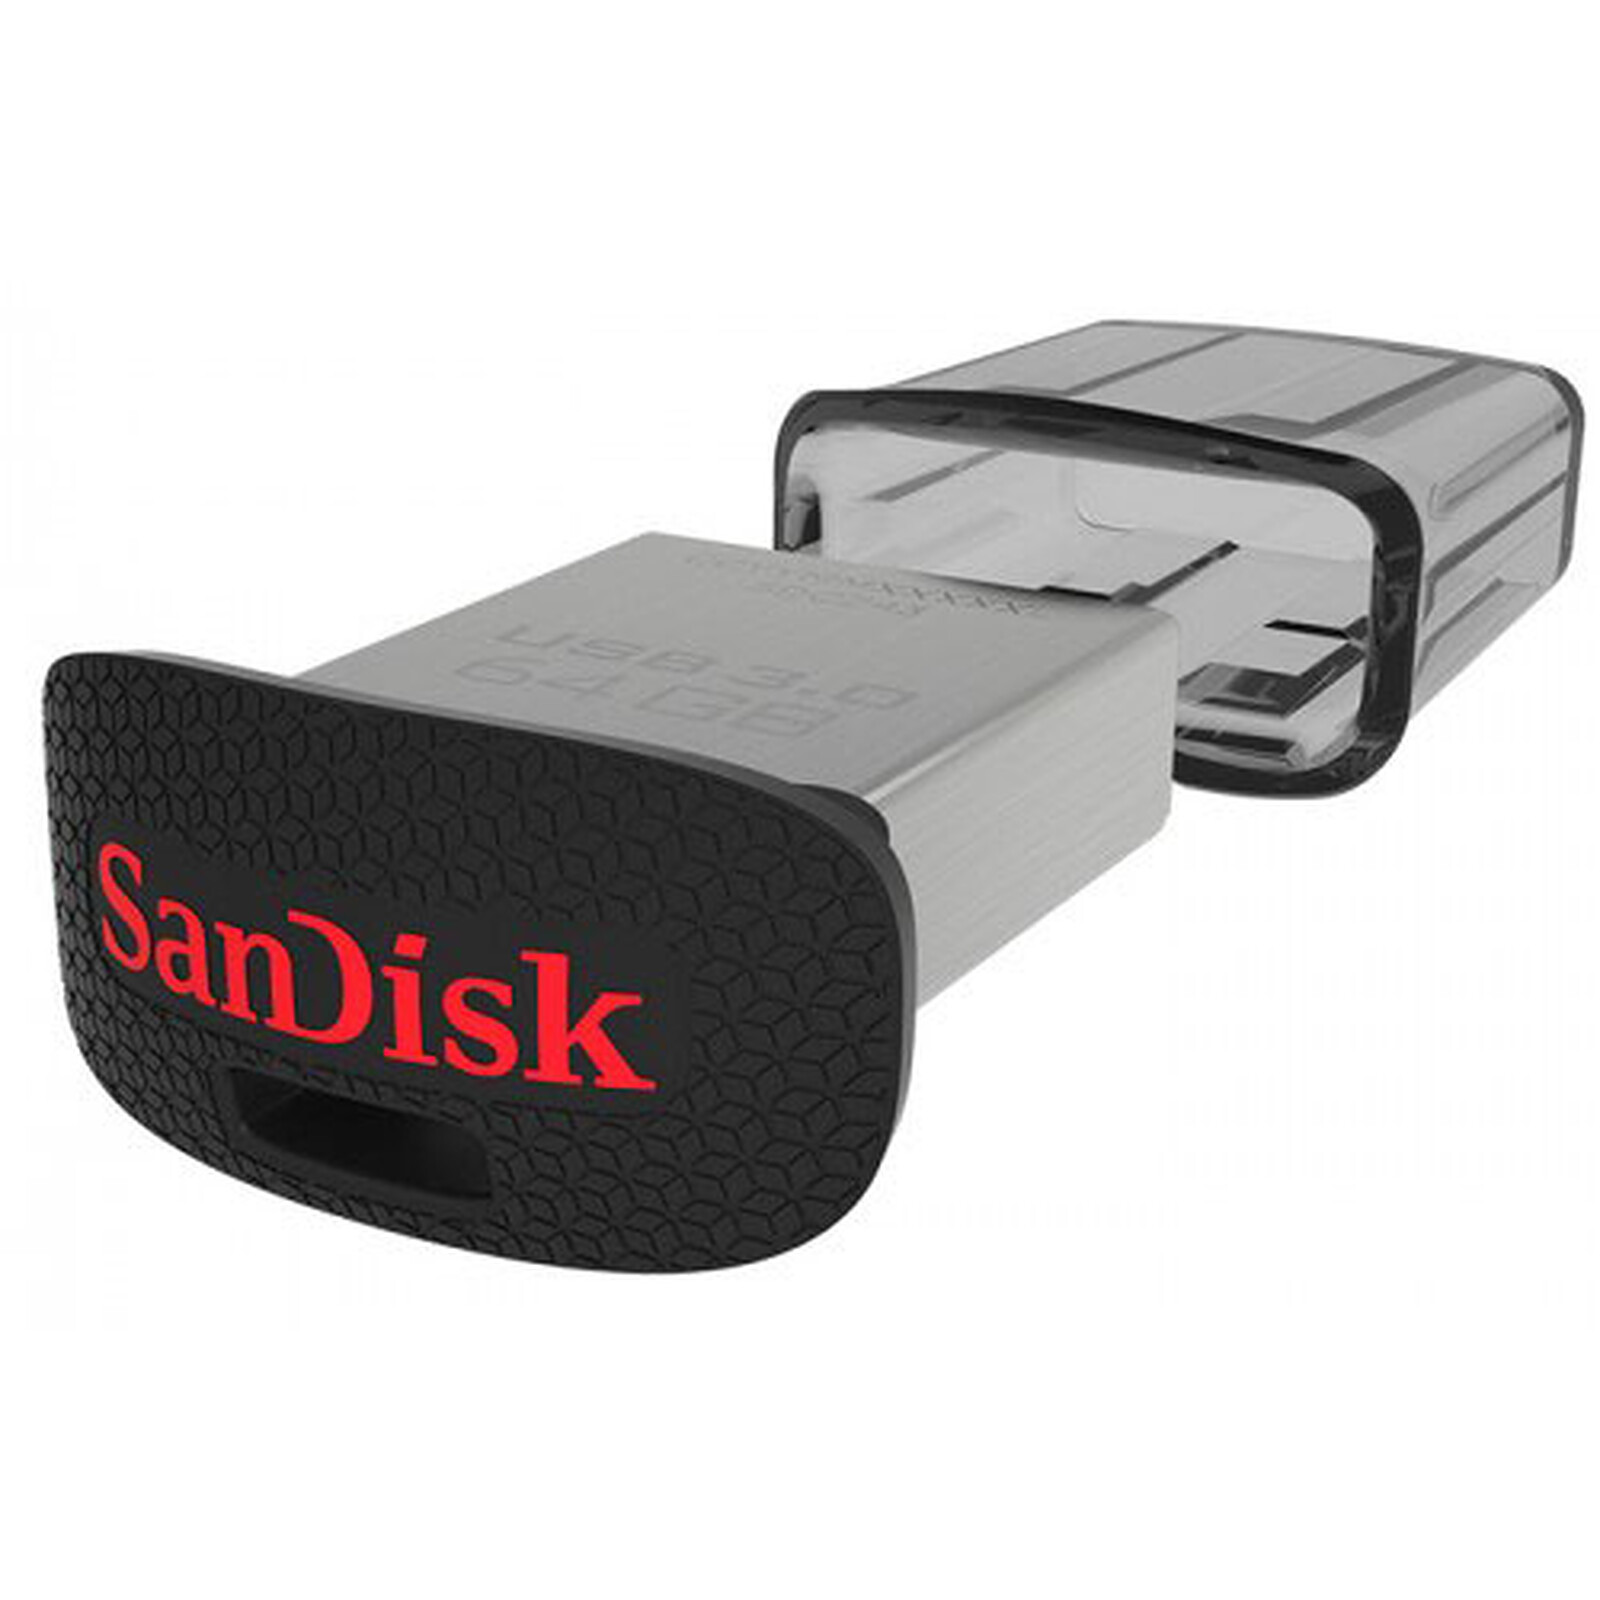 COUPLE DE CLE USB SANDISK 128 / 64 Go ULTRA RAPIDE 3.0